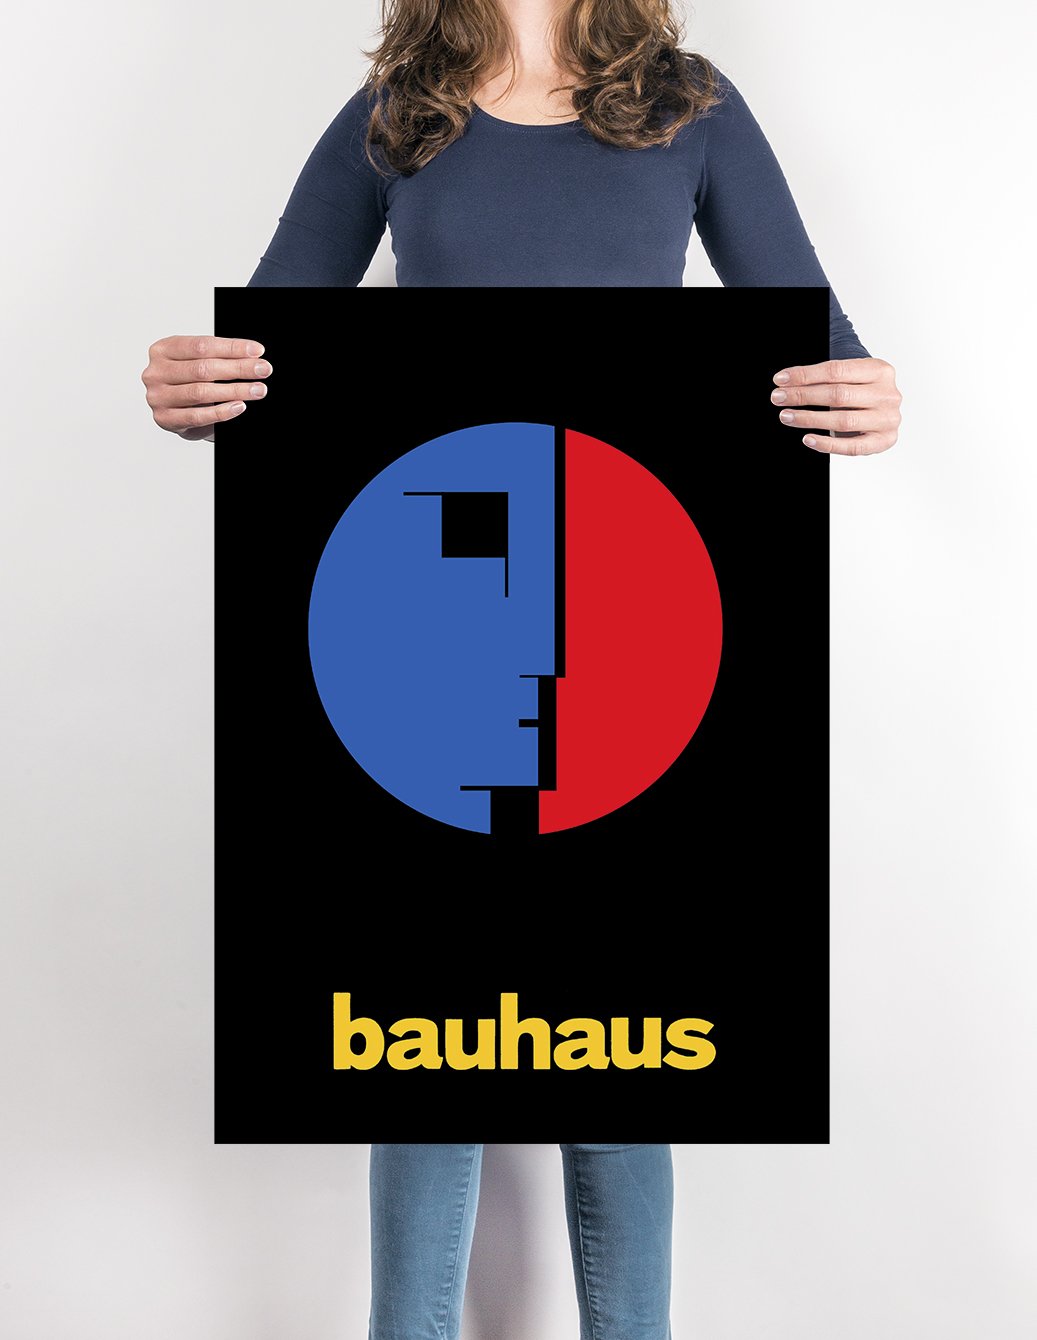 https://kuriosis.trade/cdn/shop/products/Art-BauhausPoster_Poster_1445x.jpg?v=1639110369